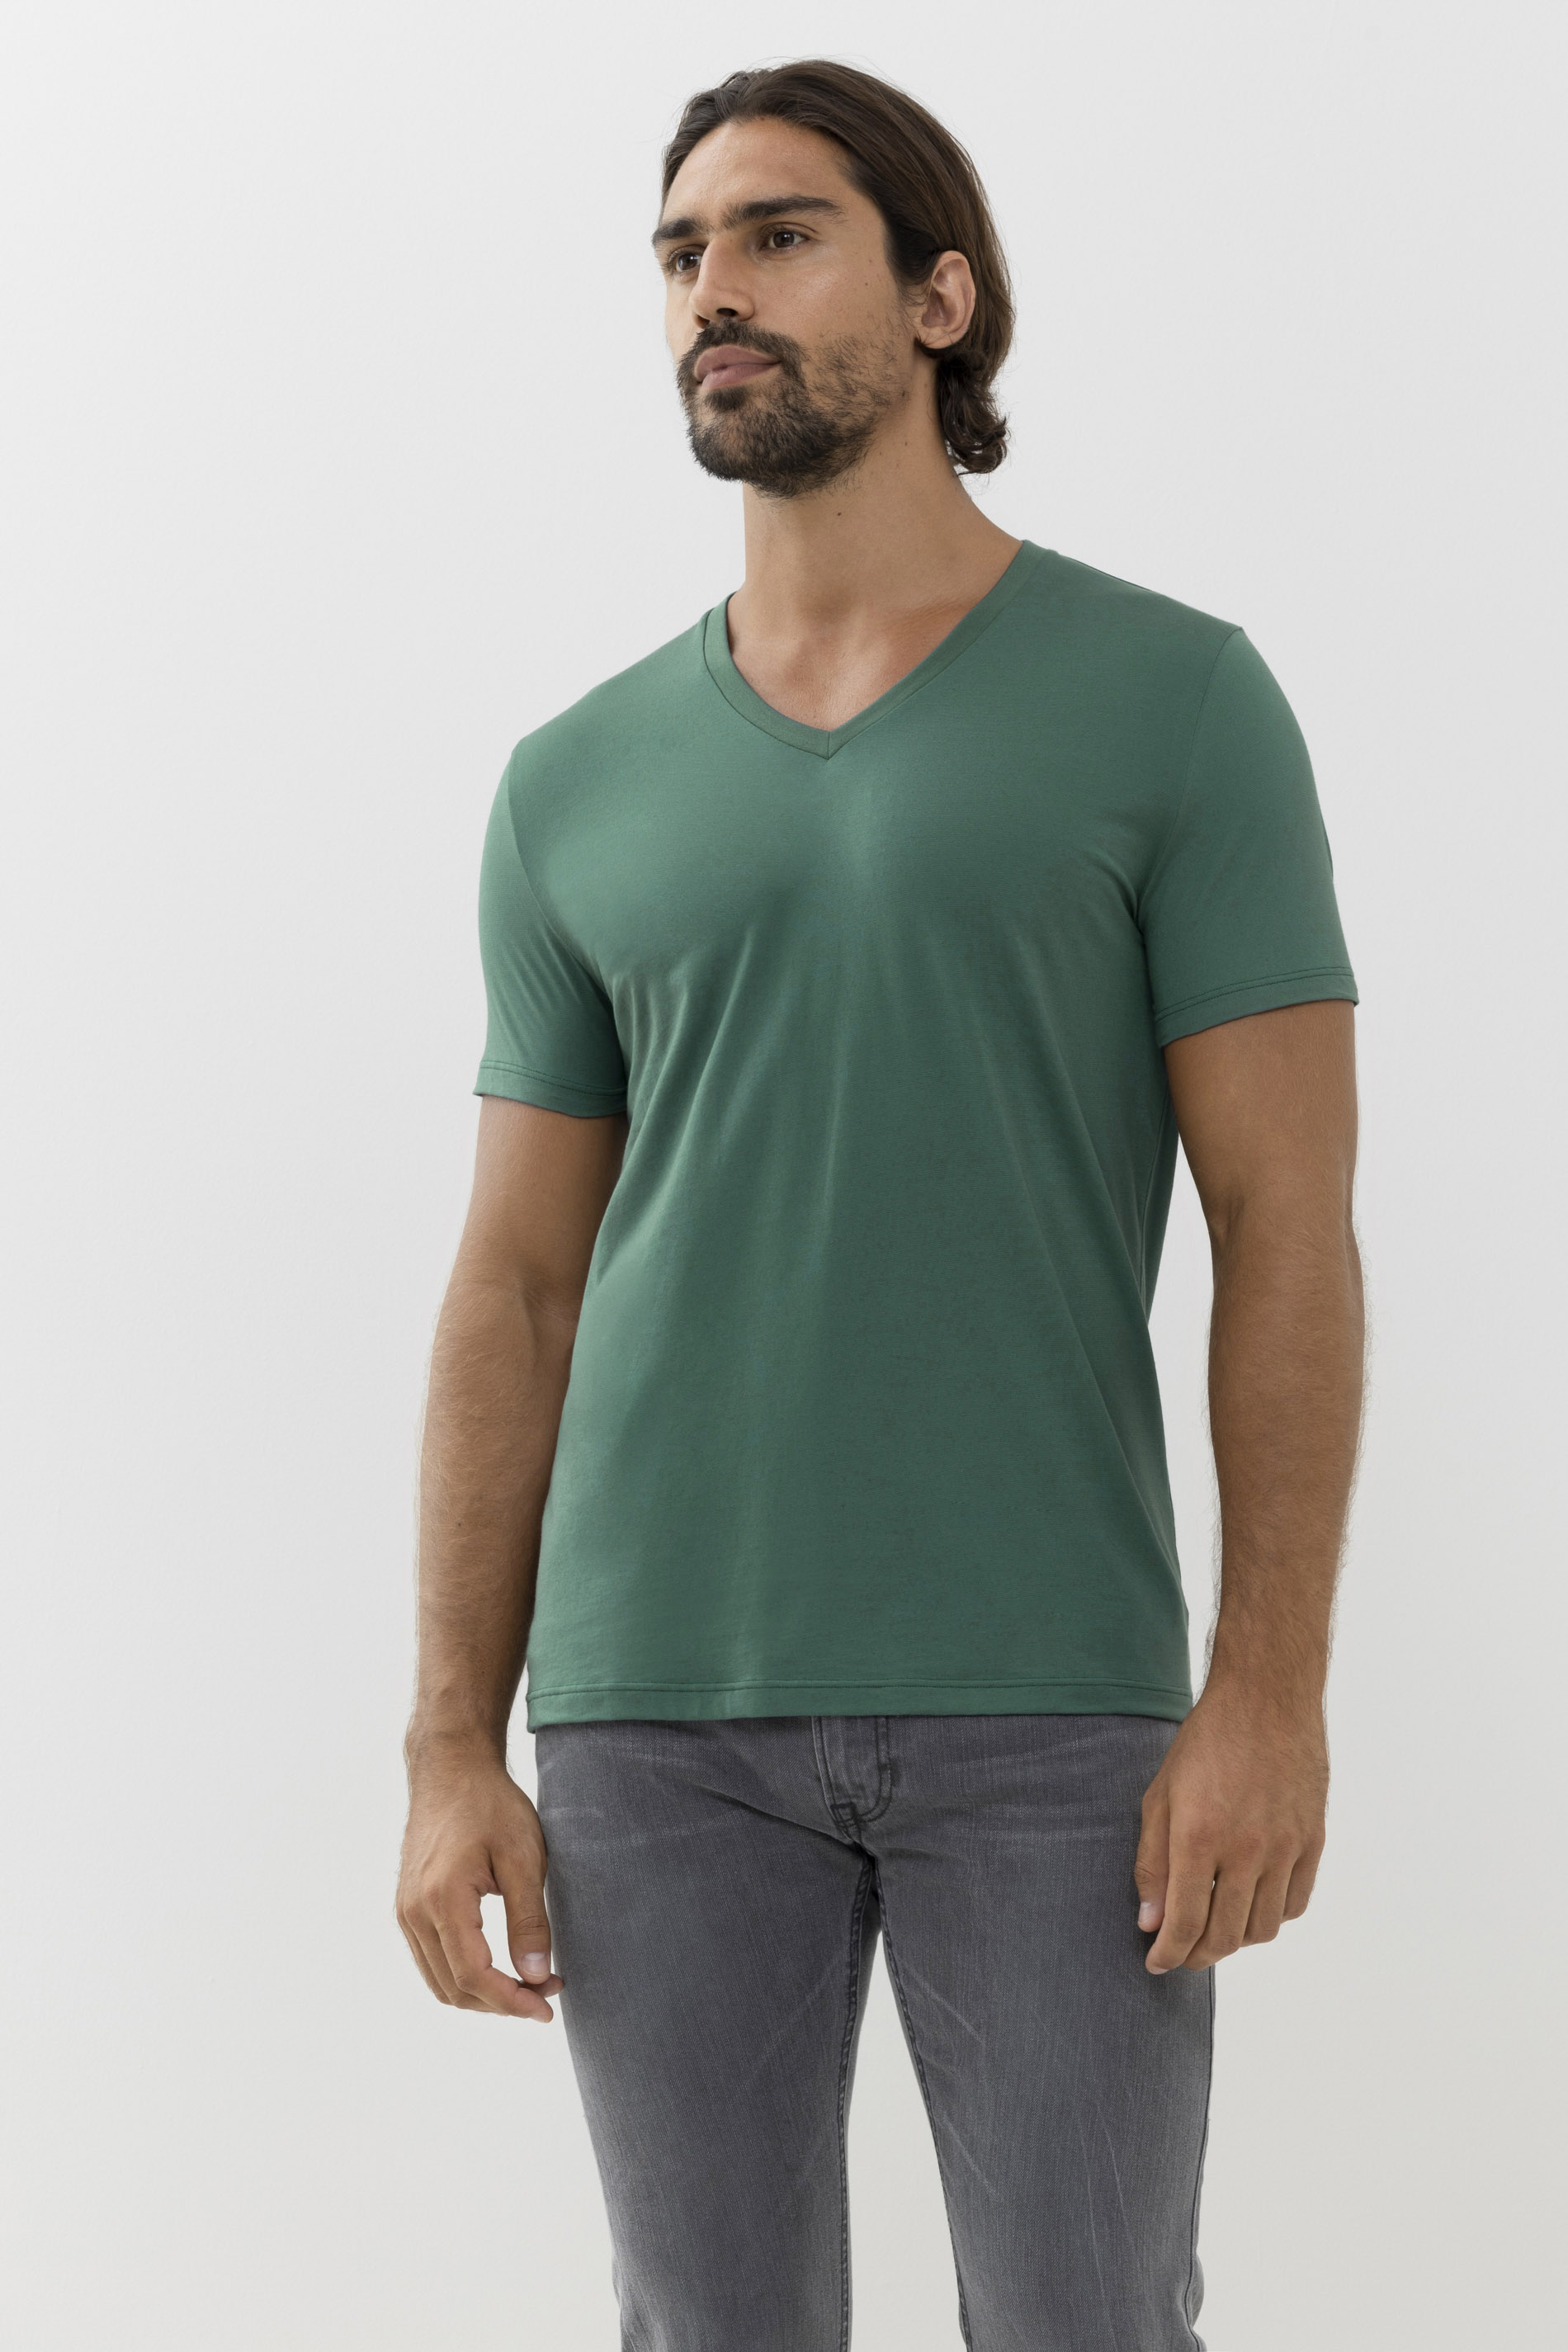 V neck shirt Dry Cotton Colour Front View | mey®